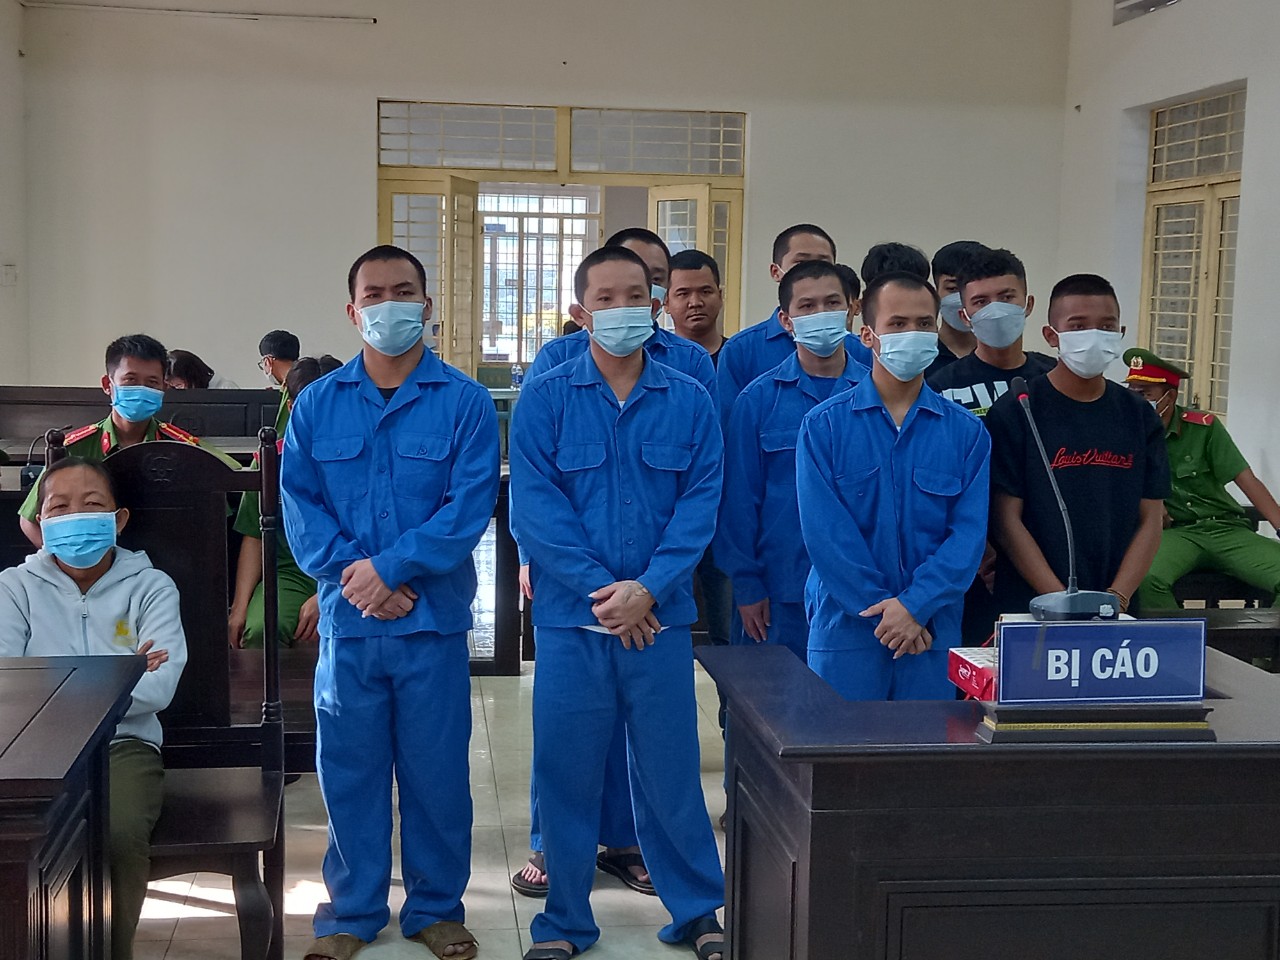  Tòa án ND huyện Tân Biên: Xét xử vụ án Gây rối trật tự công cộng  